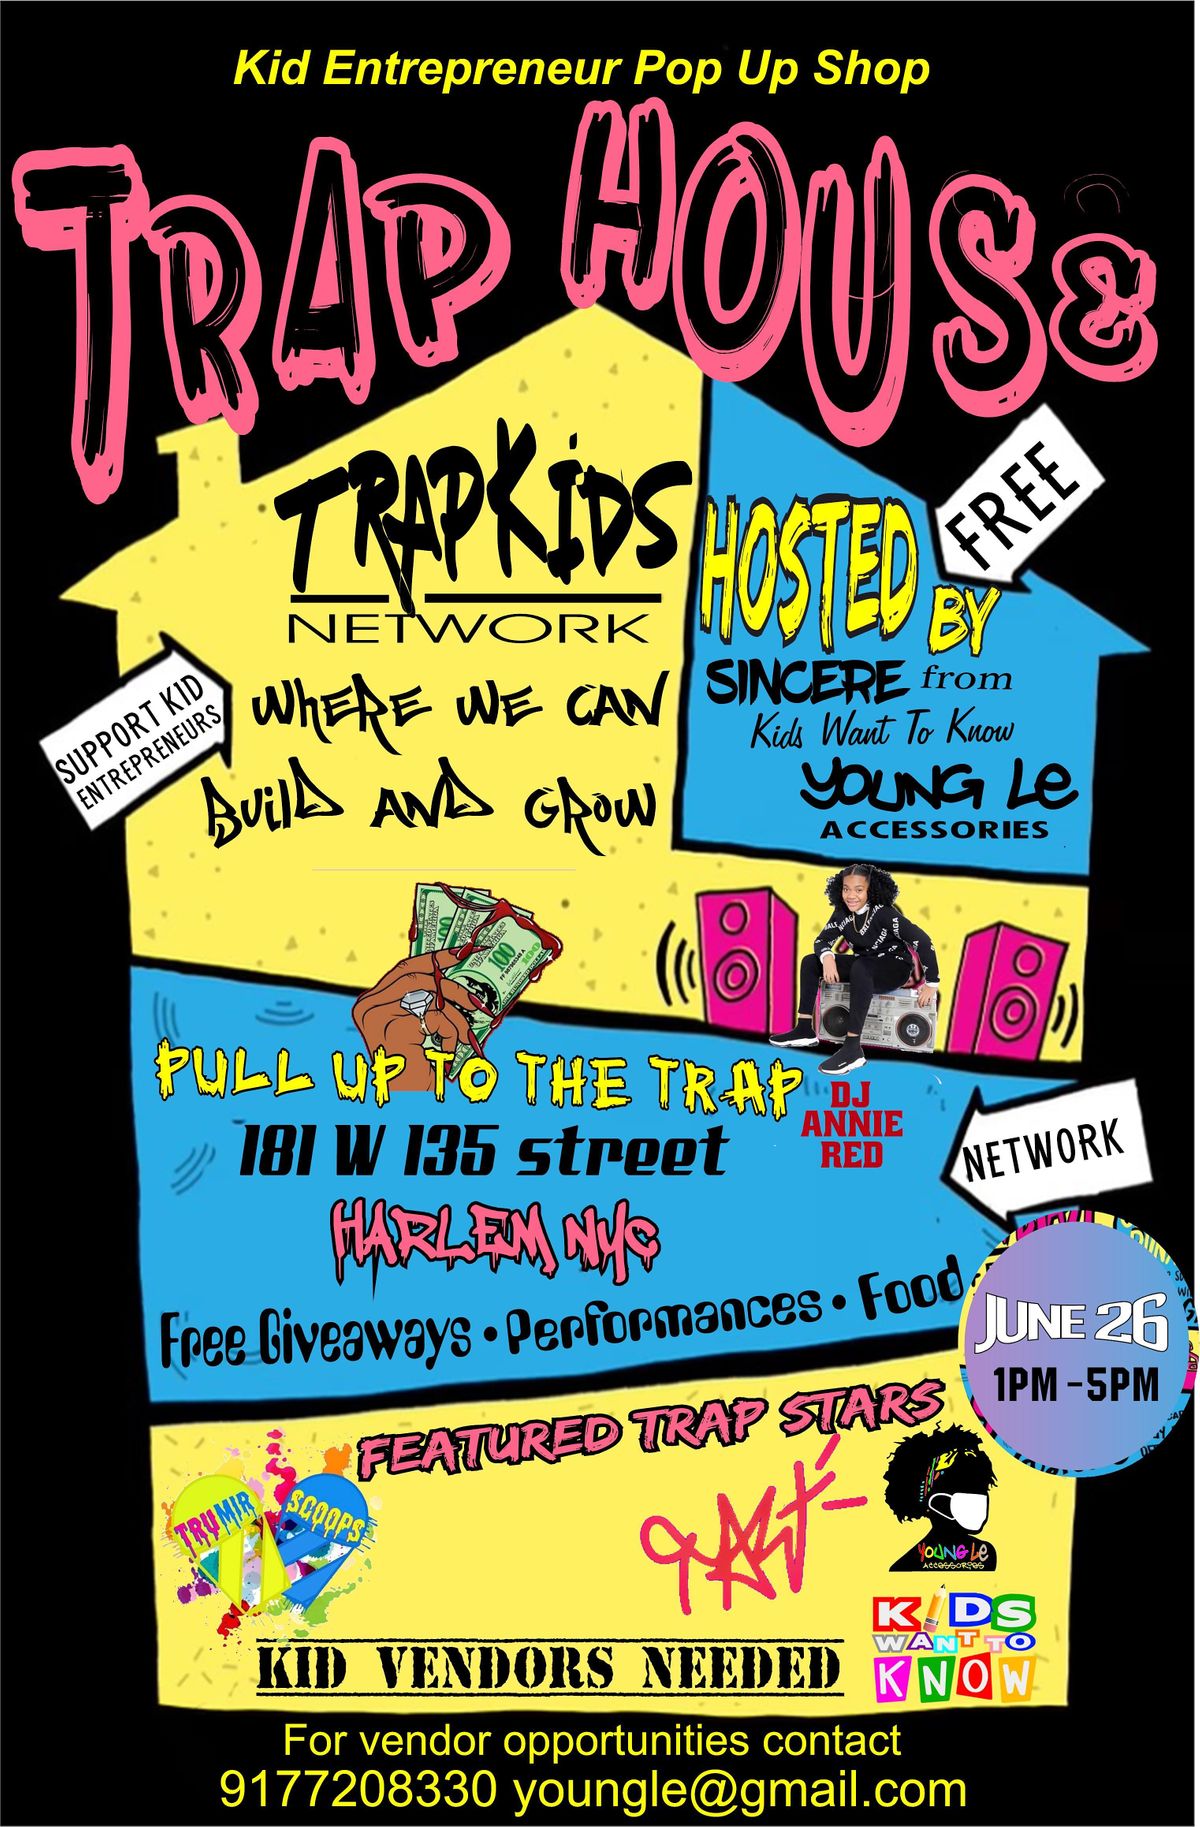 Trap House Kids Pop Up Shop